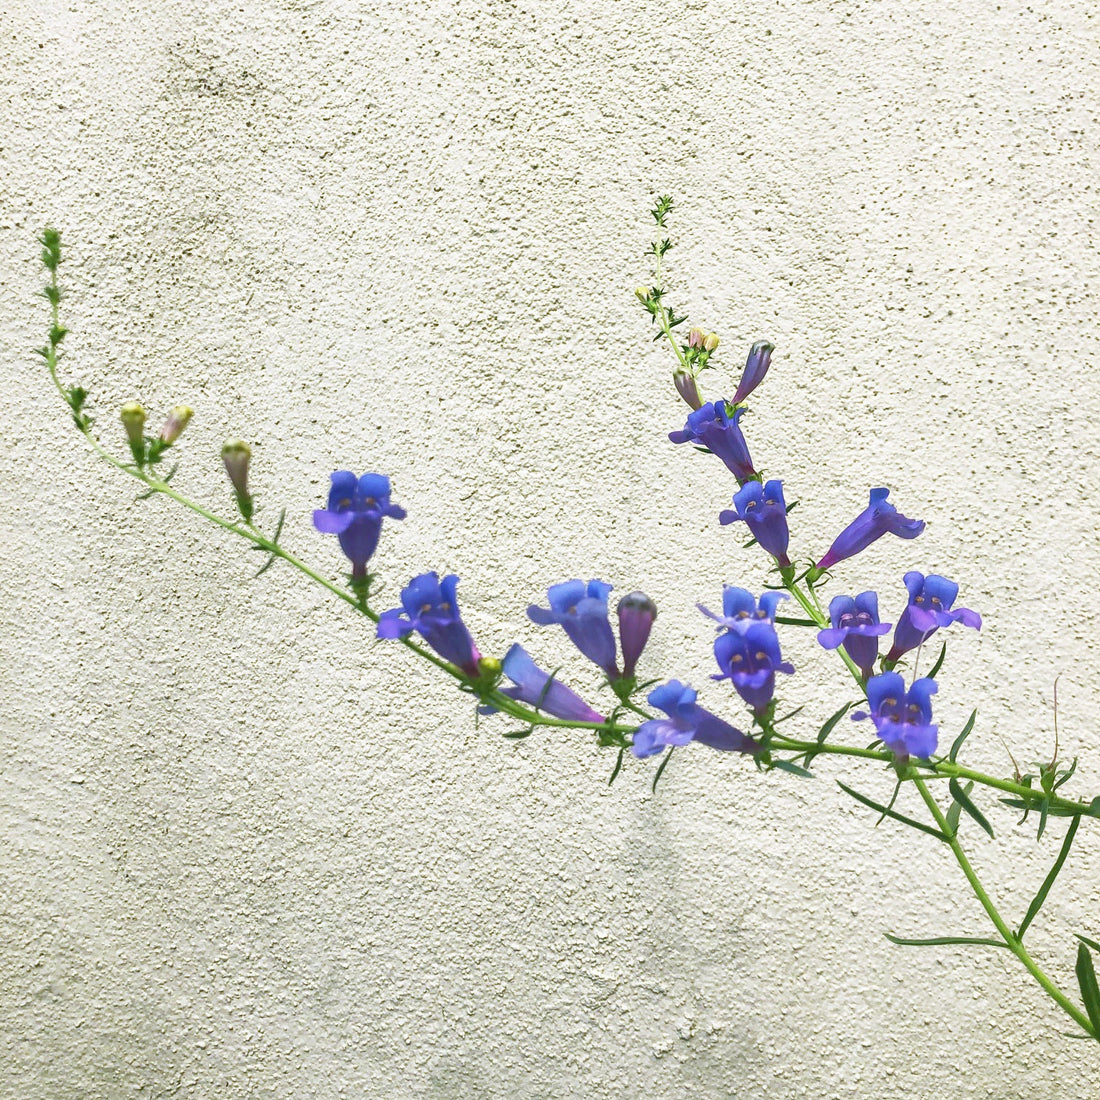 mon heterophyllus 'Margarita Bop' (Blue Bedder) Flowering